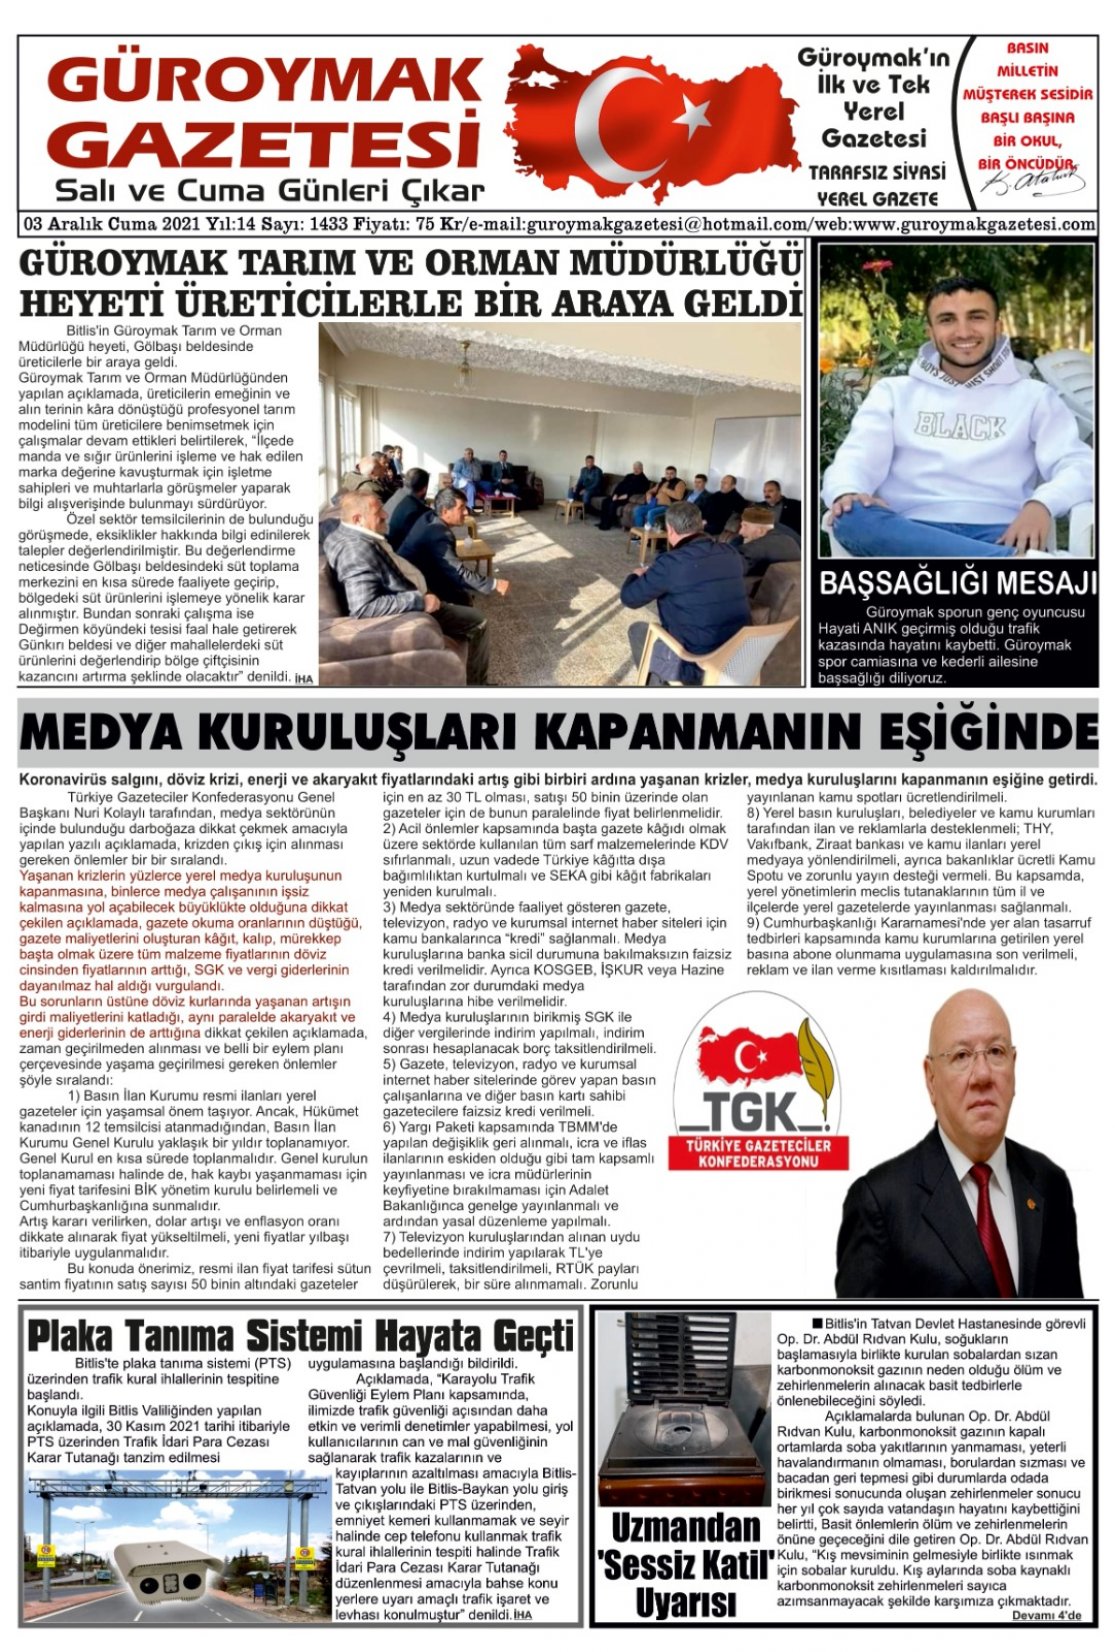 Güroymak Gazetesi IMG-20211203-WA0001.jpg Sayılı Gazete Küpürü